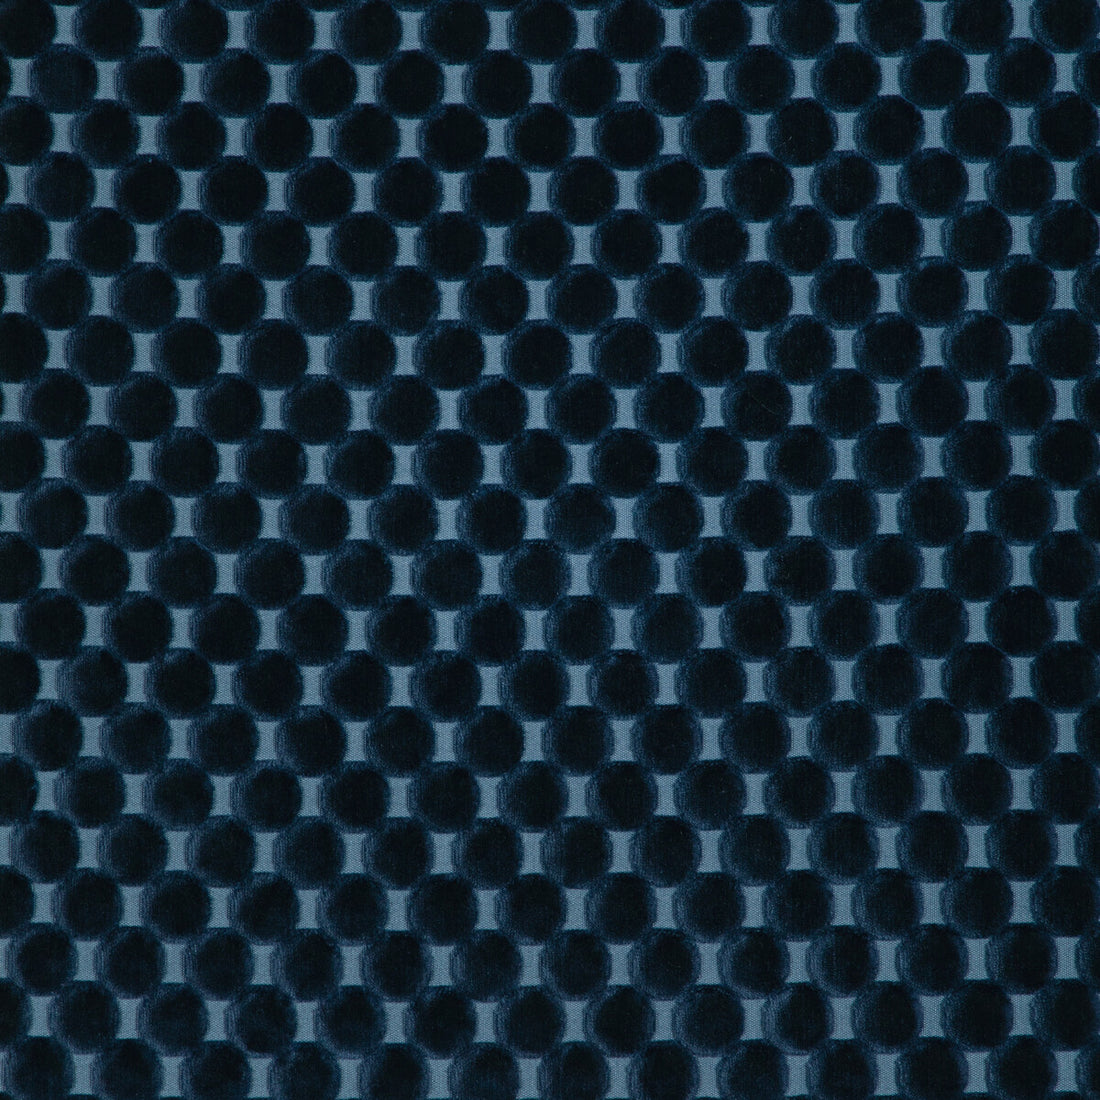 Kravet Design fabric in 37165-50 color - pattern 37165.50.0 - by Kravet Design